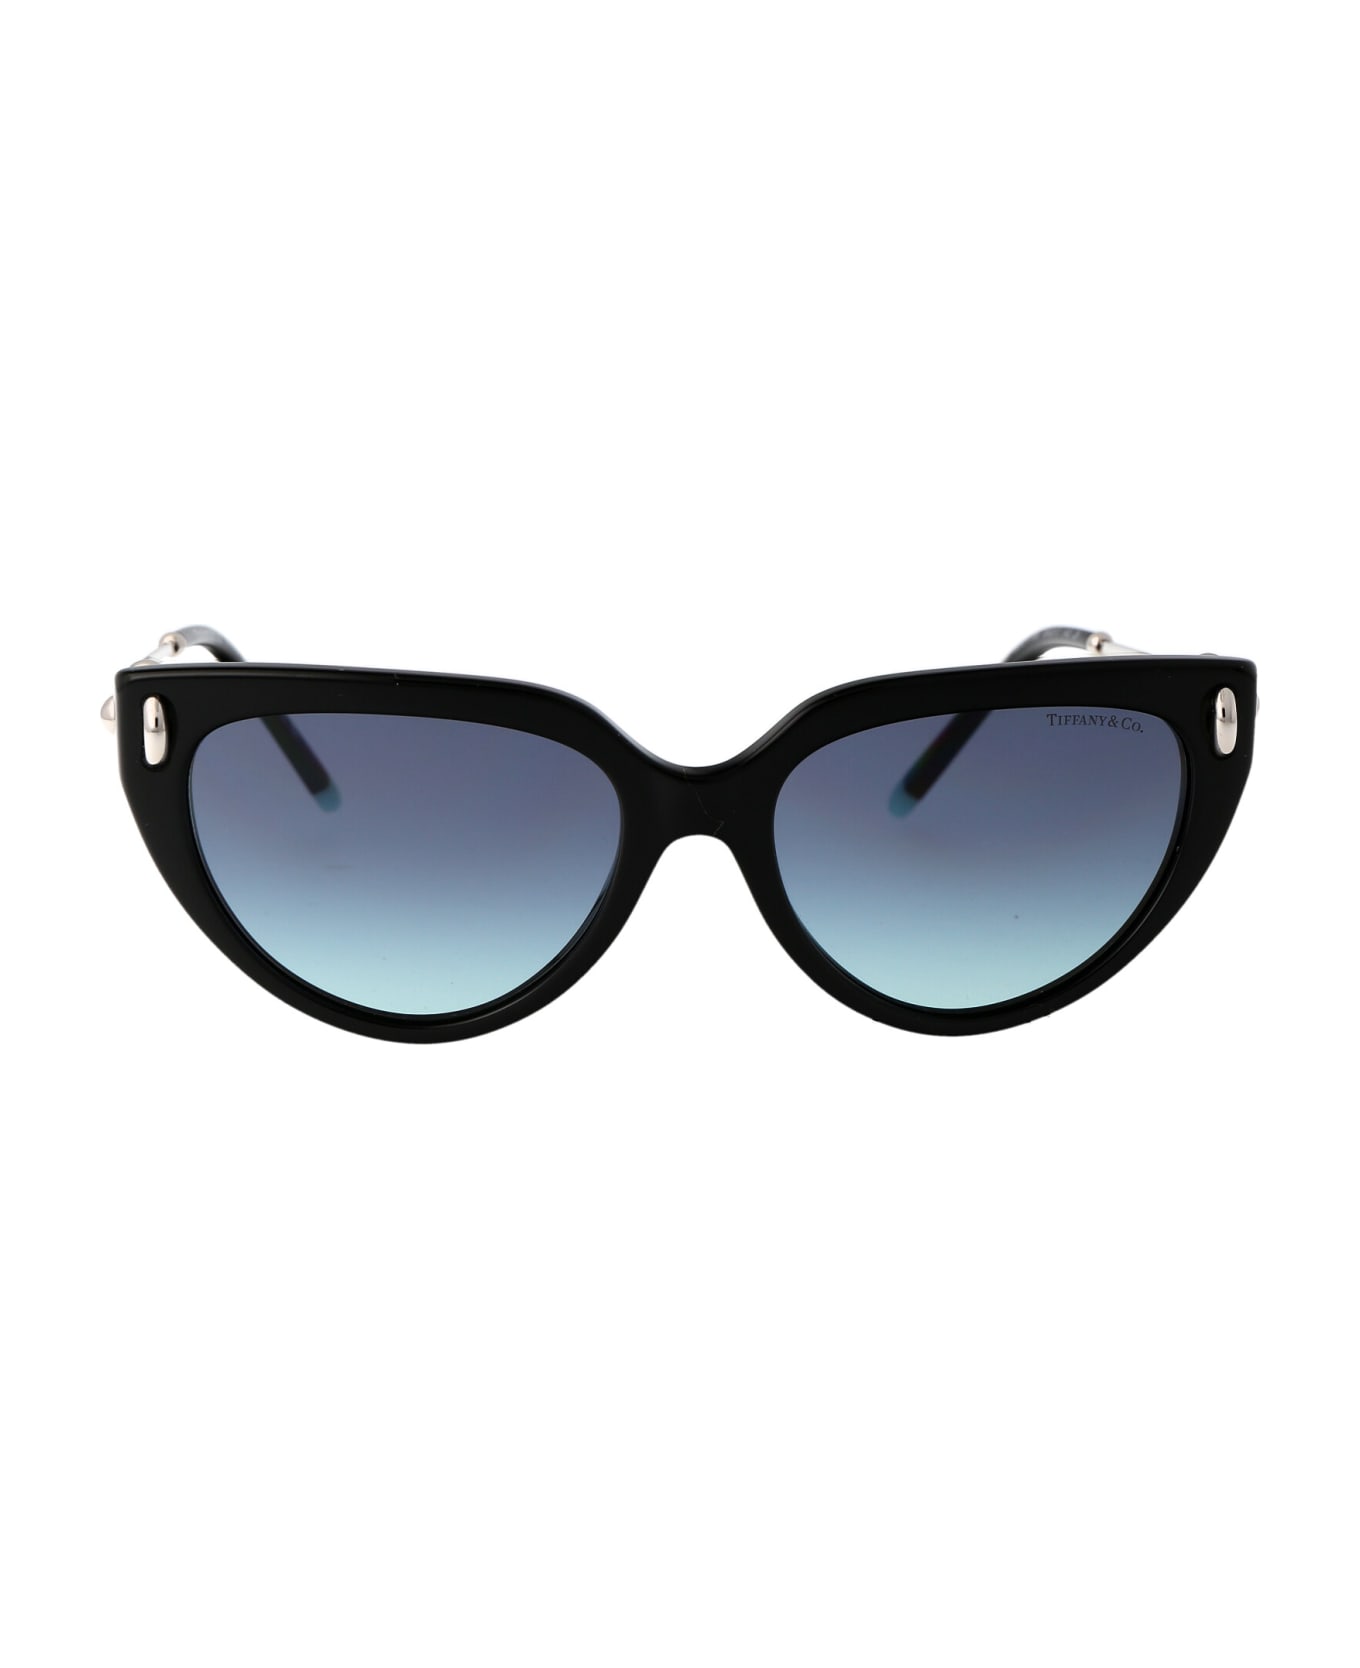 Tiffany & Co. 0tf4195 Sunglasses - 80019S Black